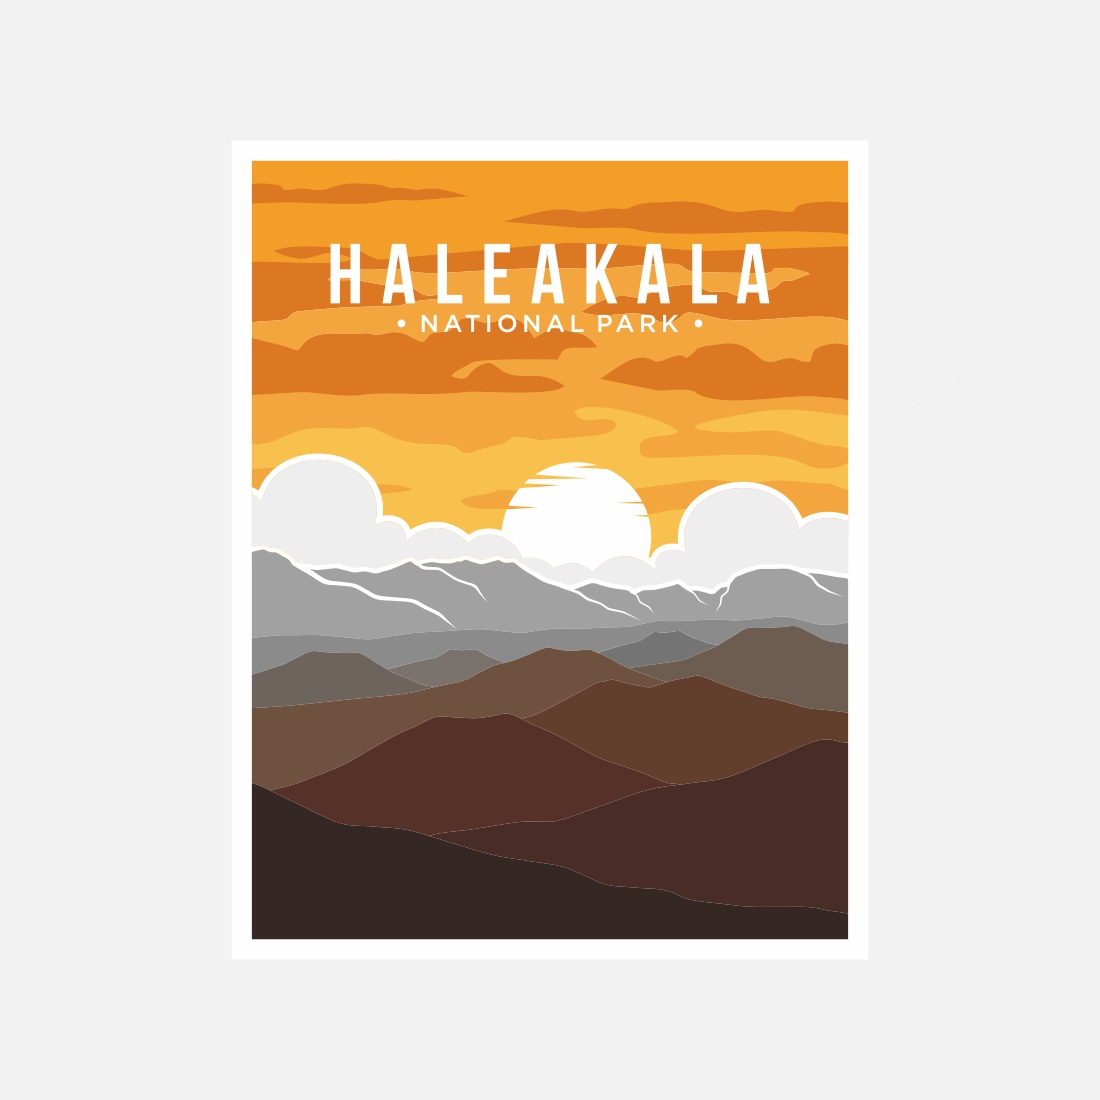 Haleakala National Park poster vector illustration design – Only $8 preview image.